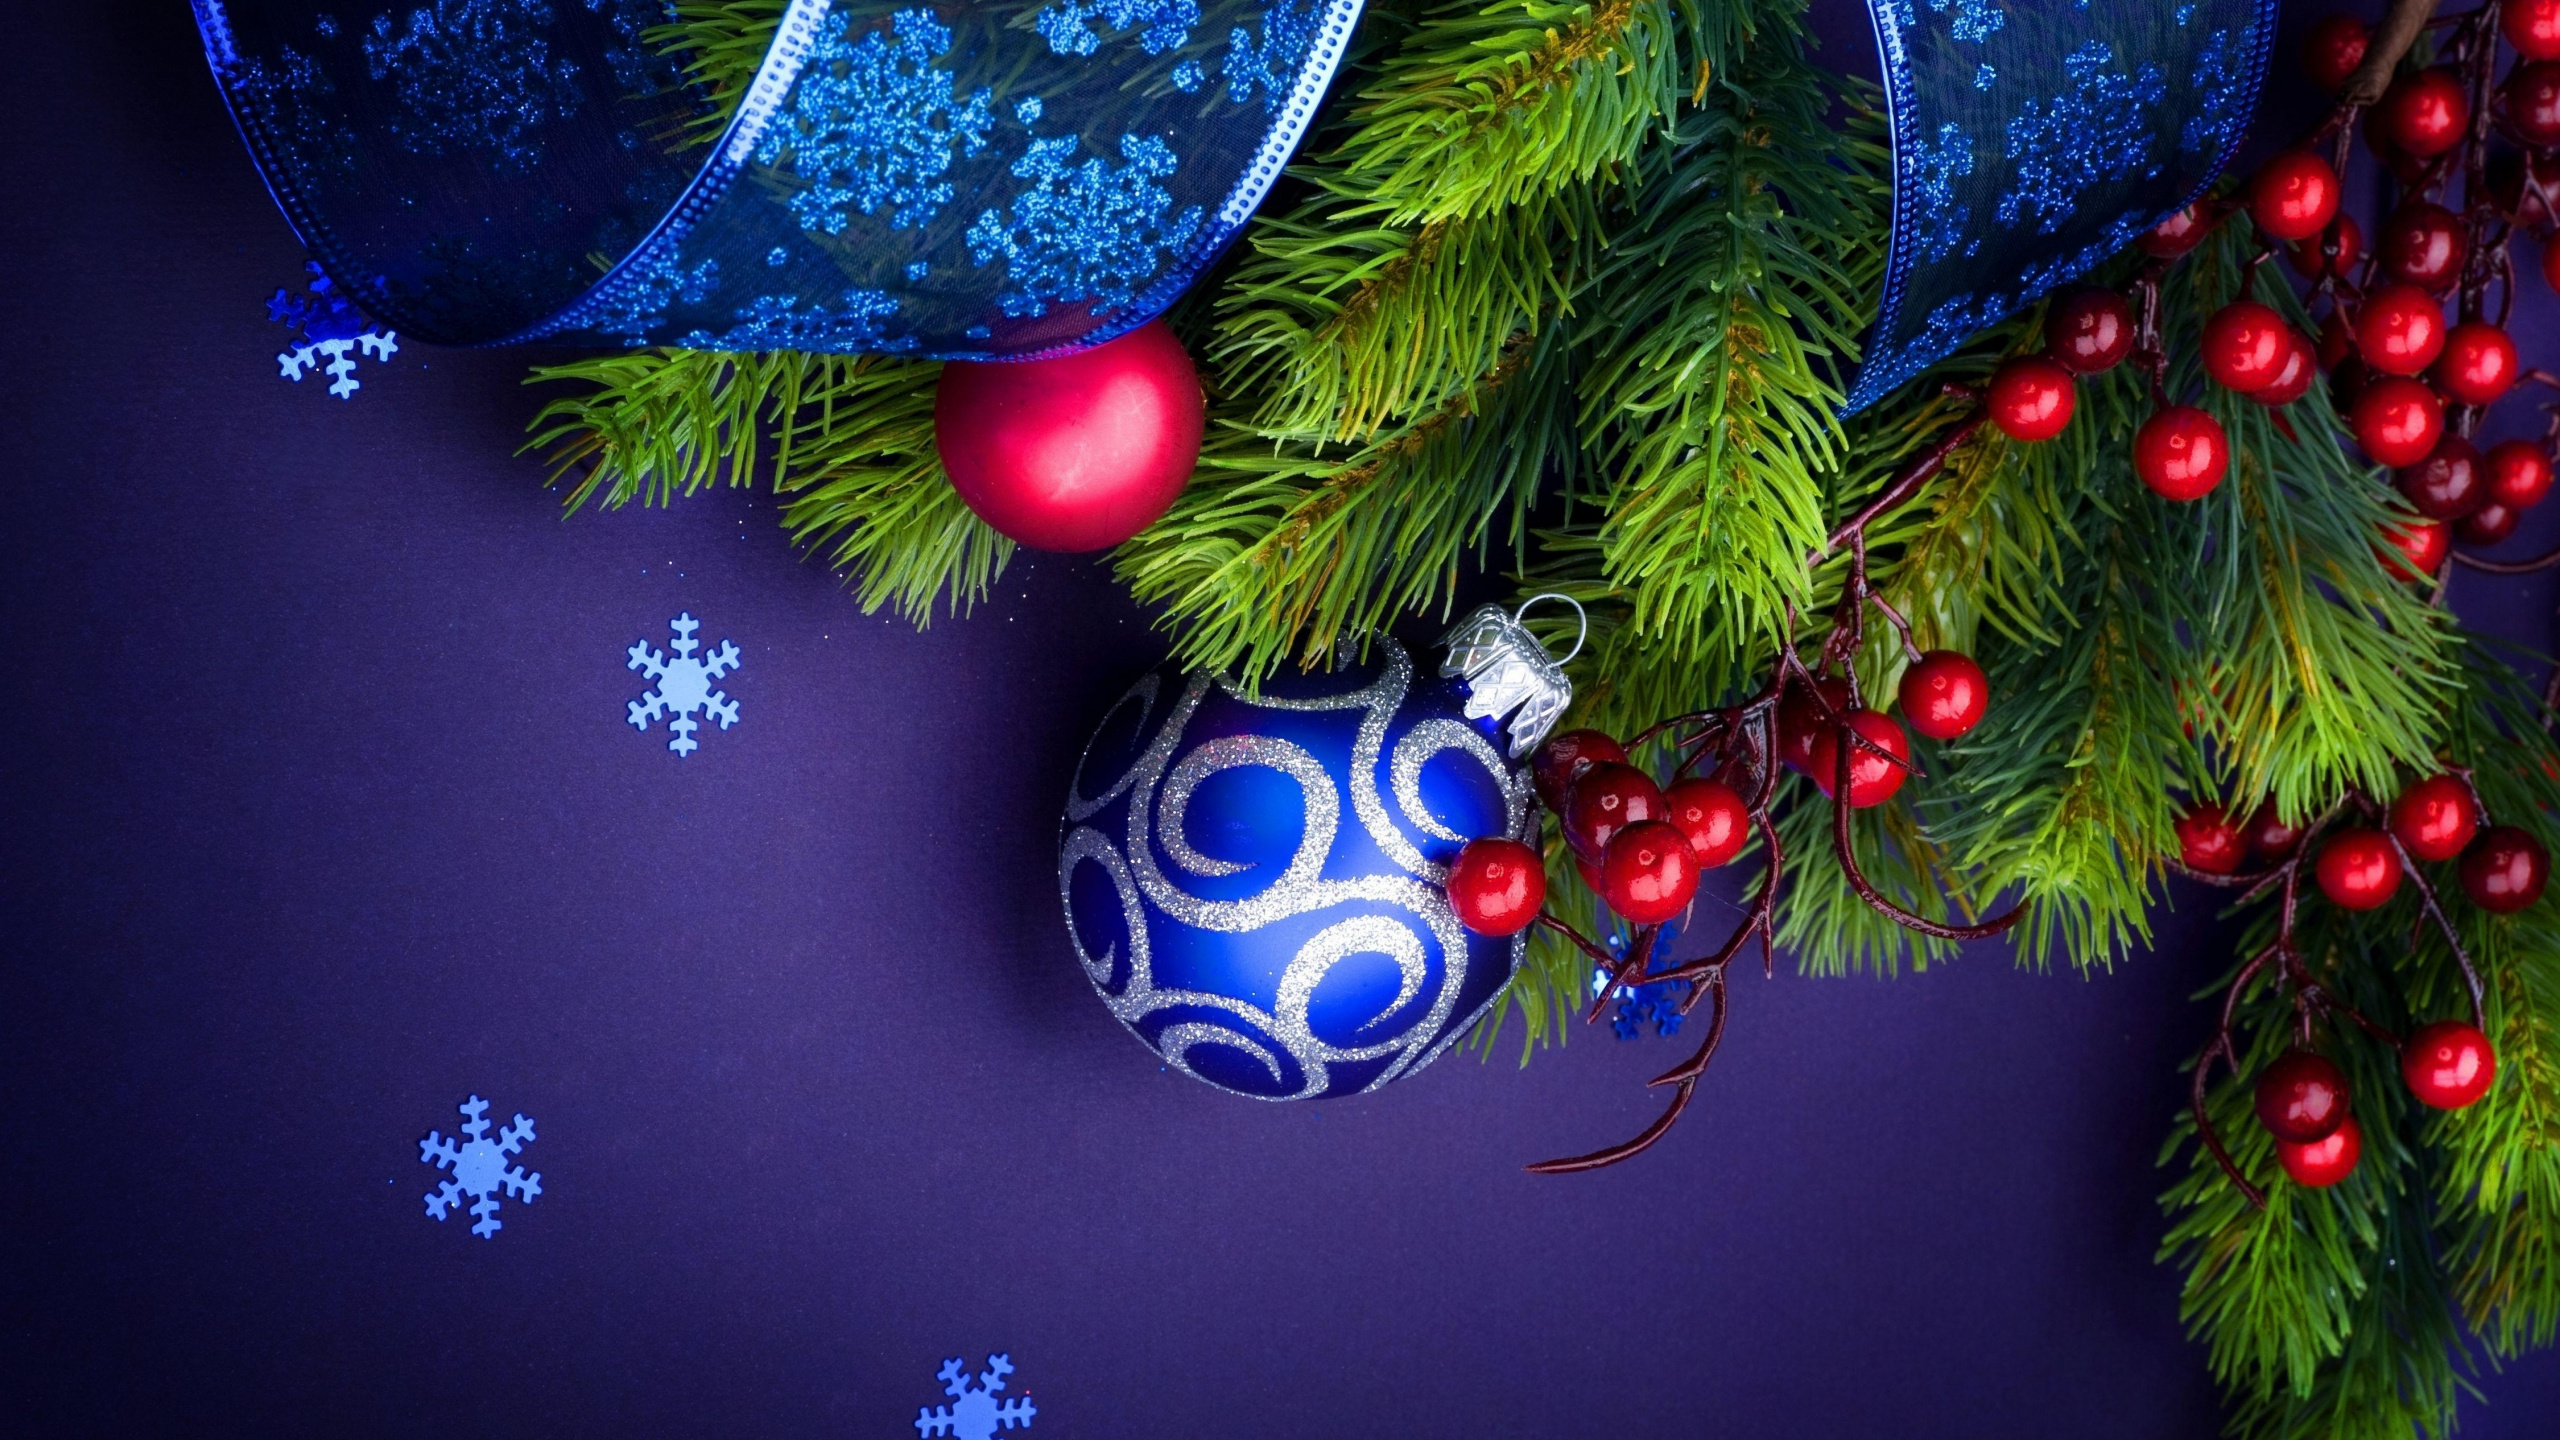 Weihnachtsdekoration, Weihnachtsbaum, Fir, Veranstaltung, Neujahr Baum. Wallpaper in 2560x1440 Resolution